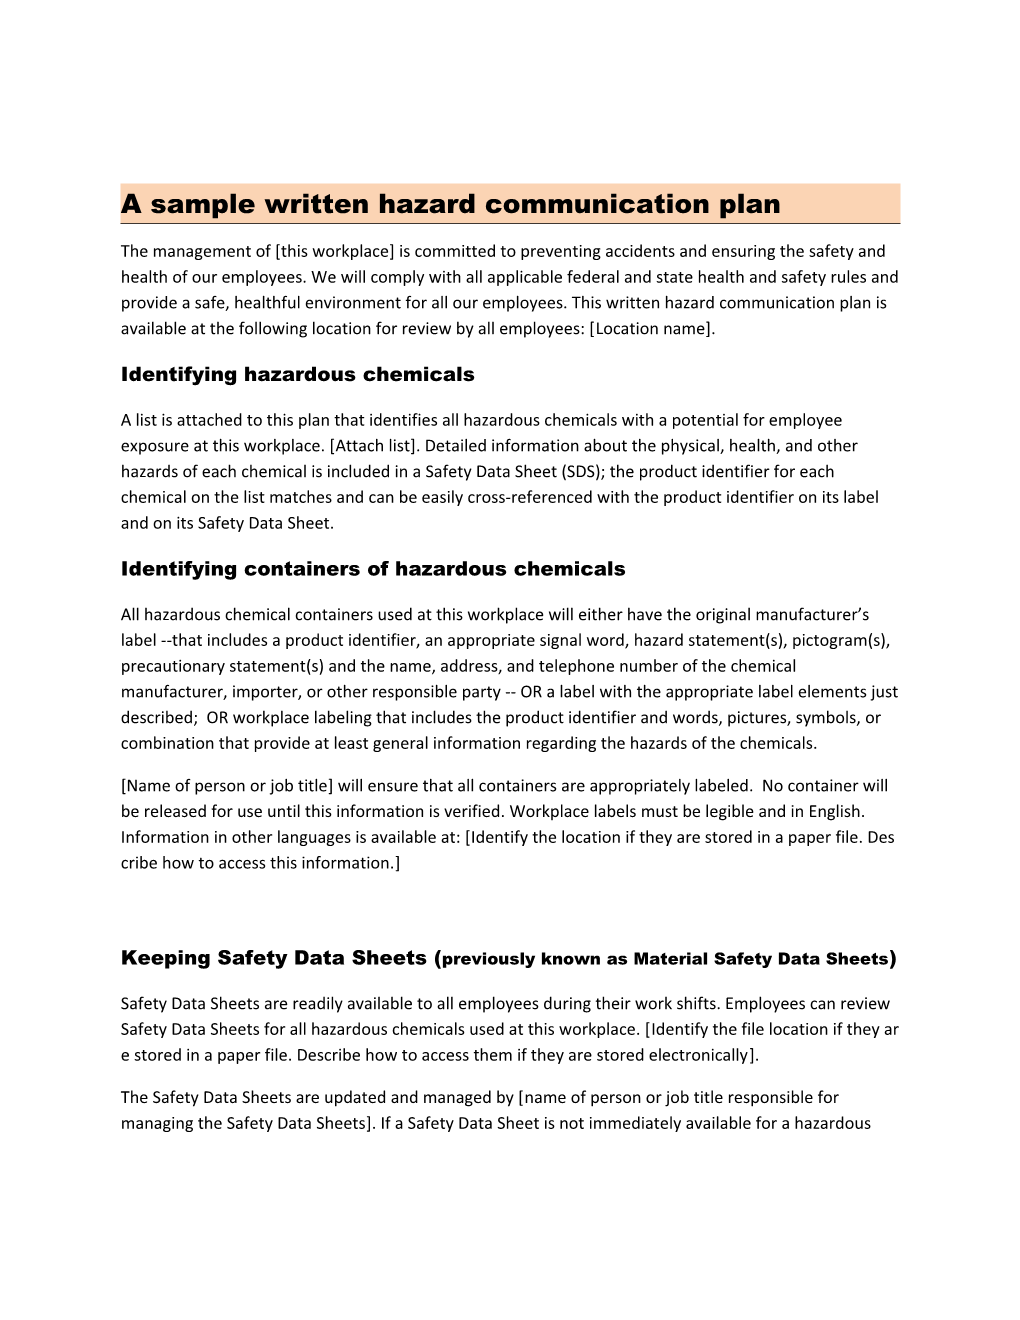 A Sample Written Hazard Communication Plan